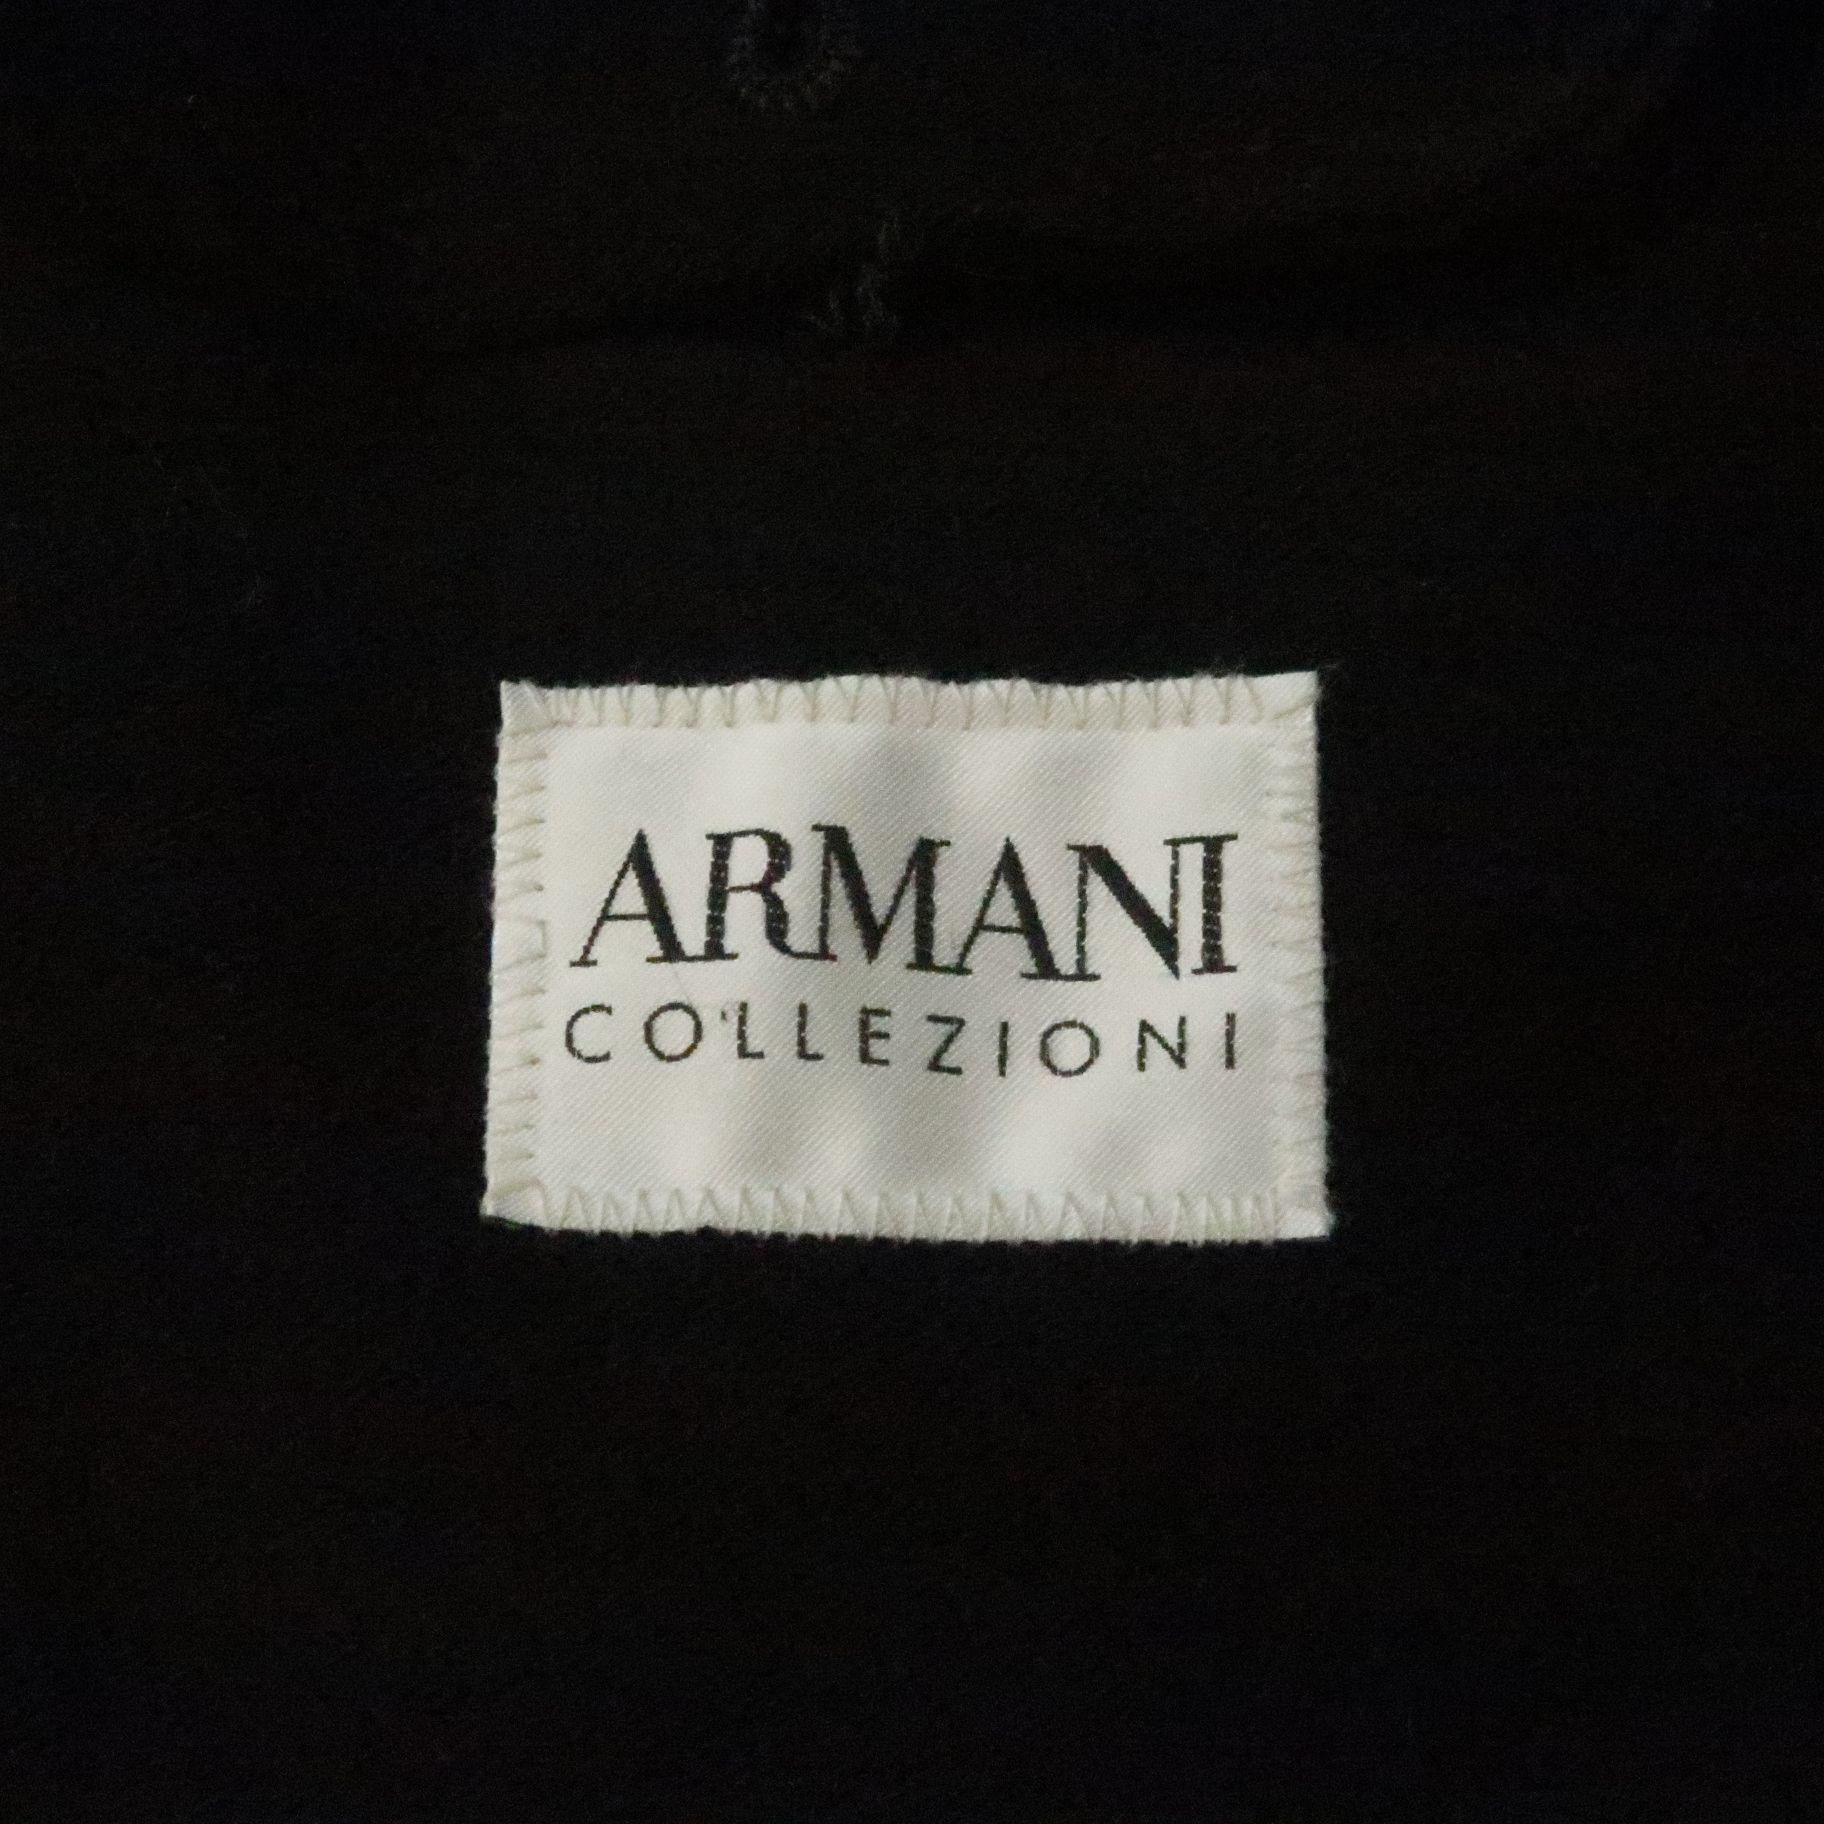 ARMANI COLLEZIONI 38 Brown Rayon / Cotton Jacket 7